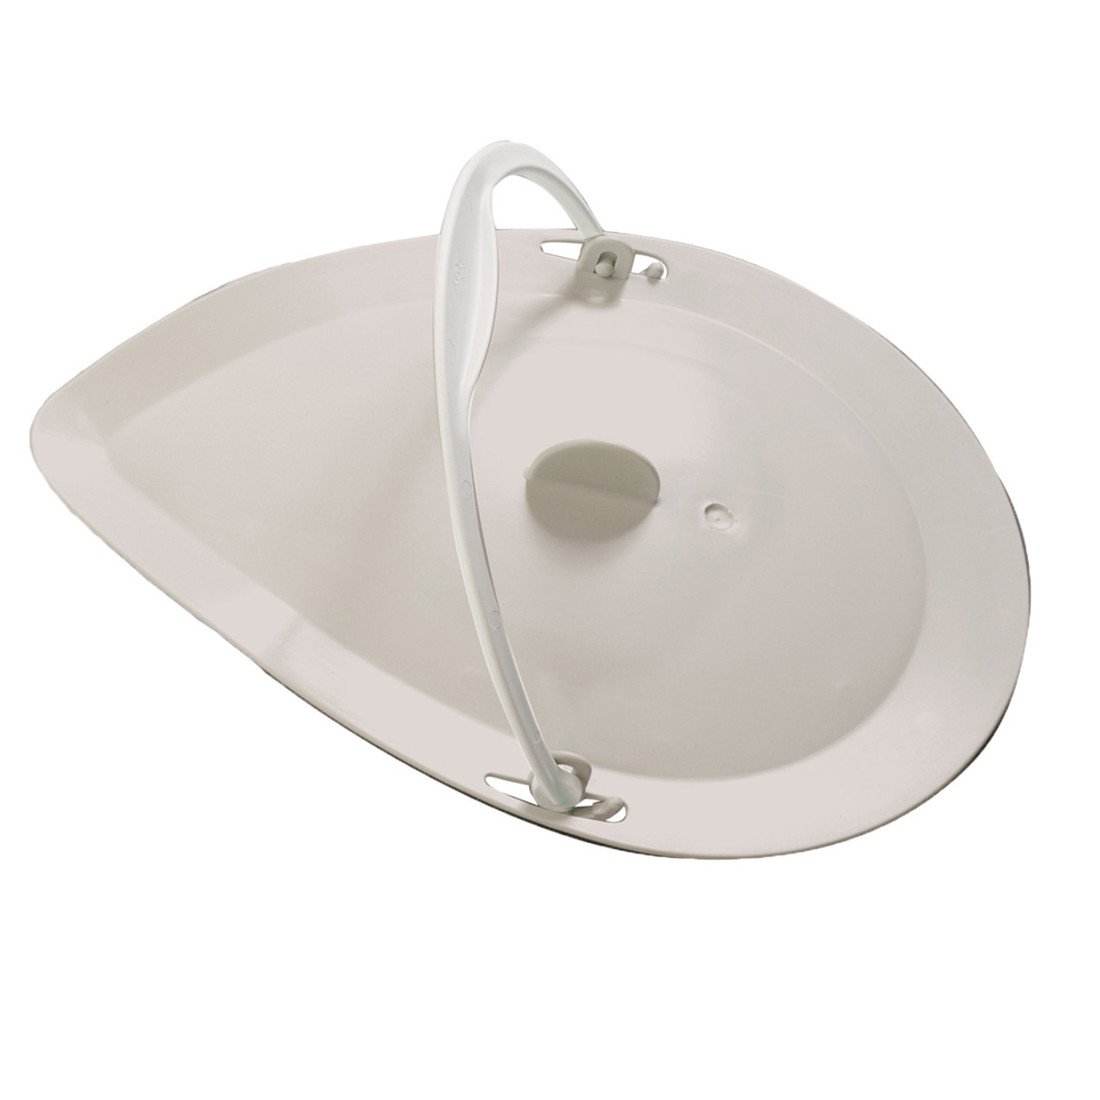 Etac-Clean-Bedpan-lid-with-handle